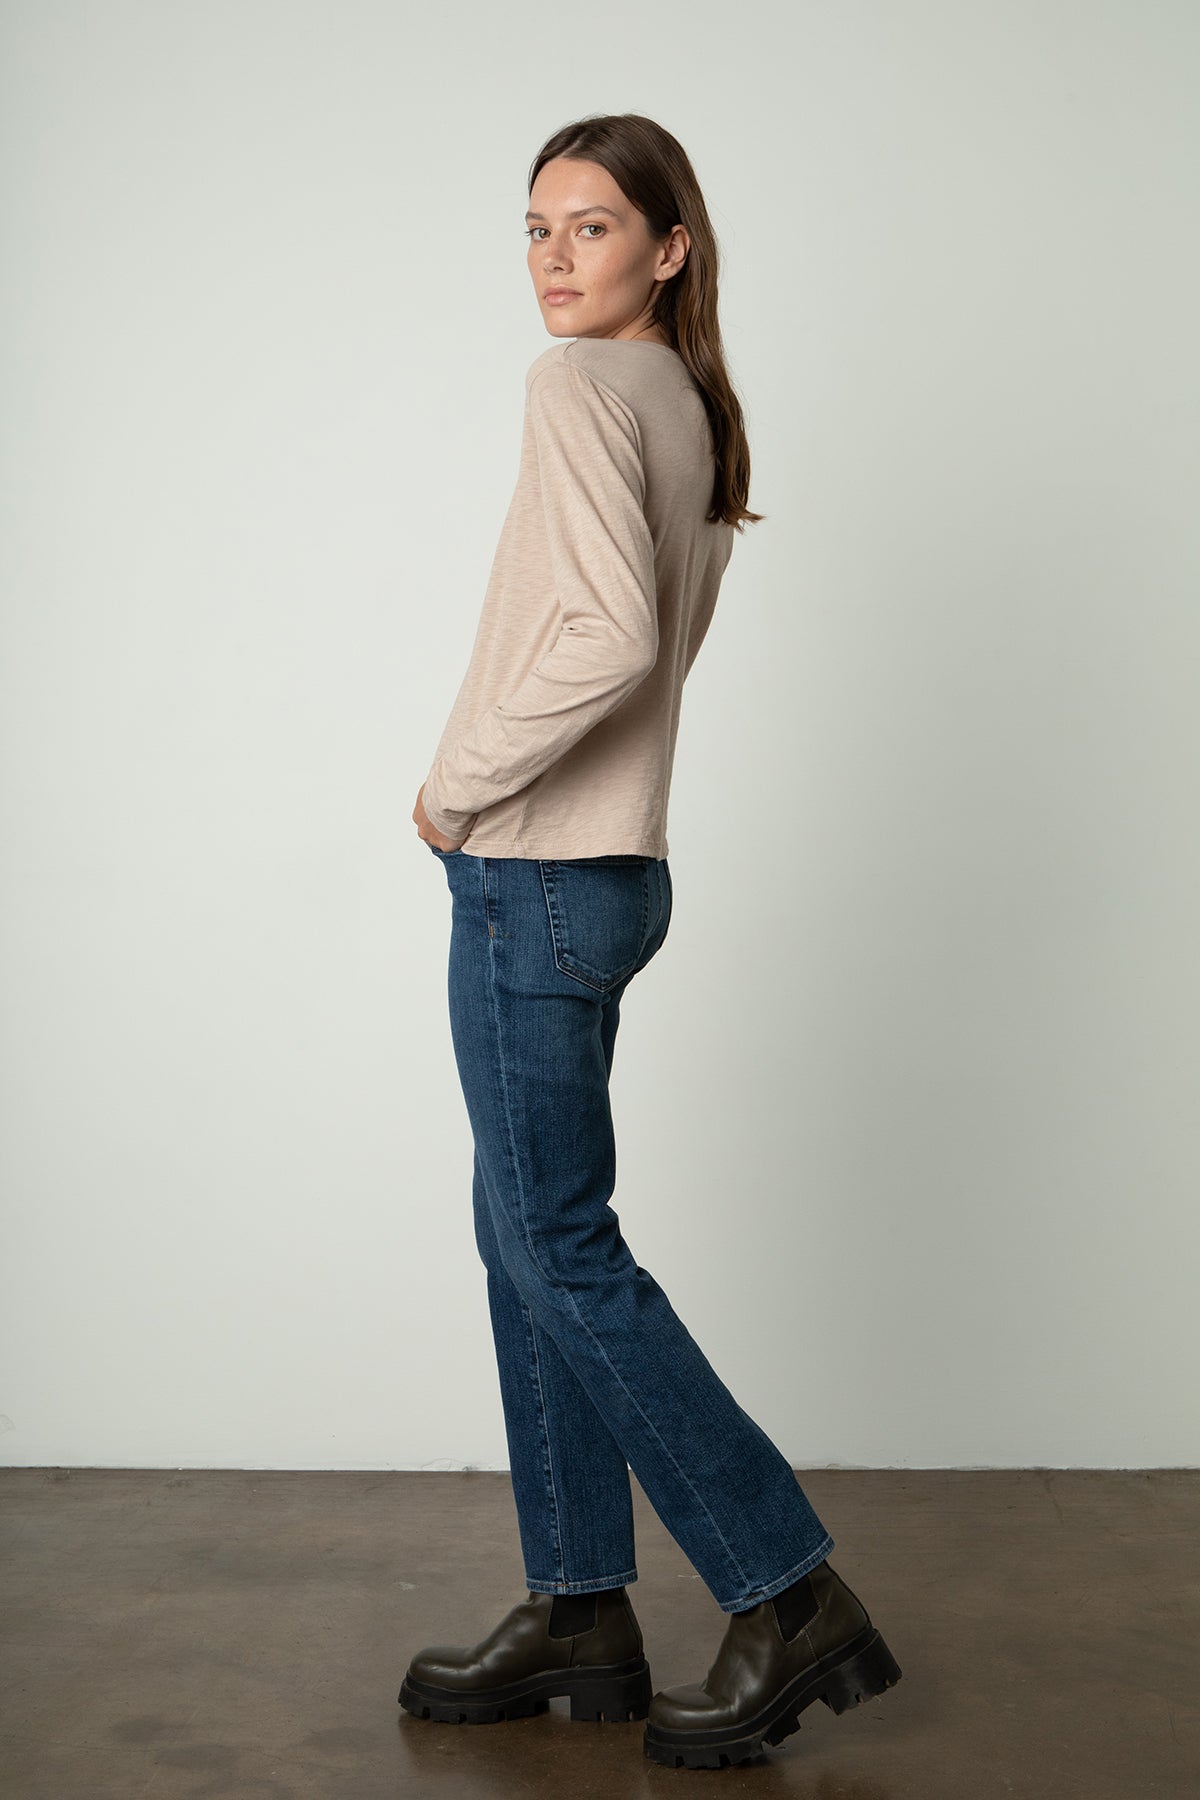 The model is wearing HESTER CREW NECK TEE by Velvet by Graham & Spencer.-24532973519041